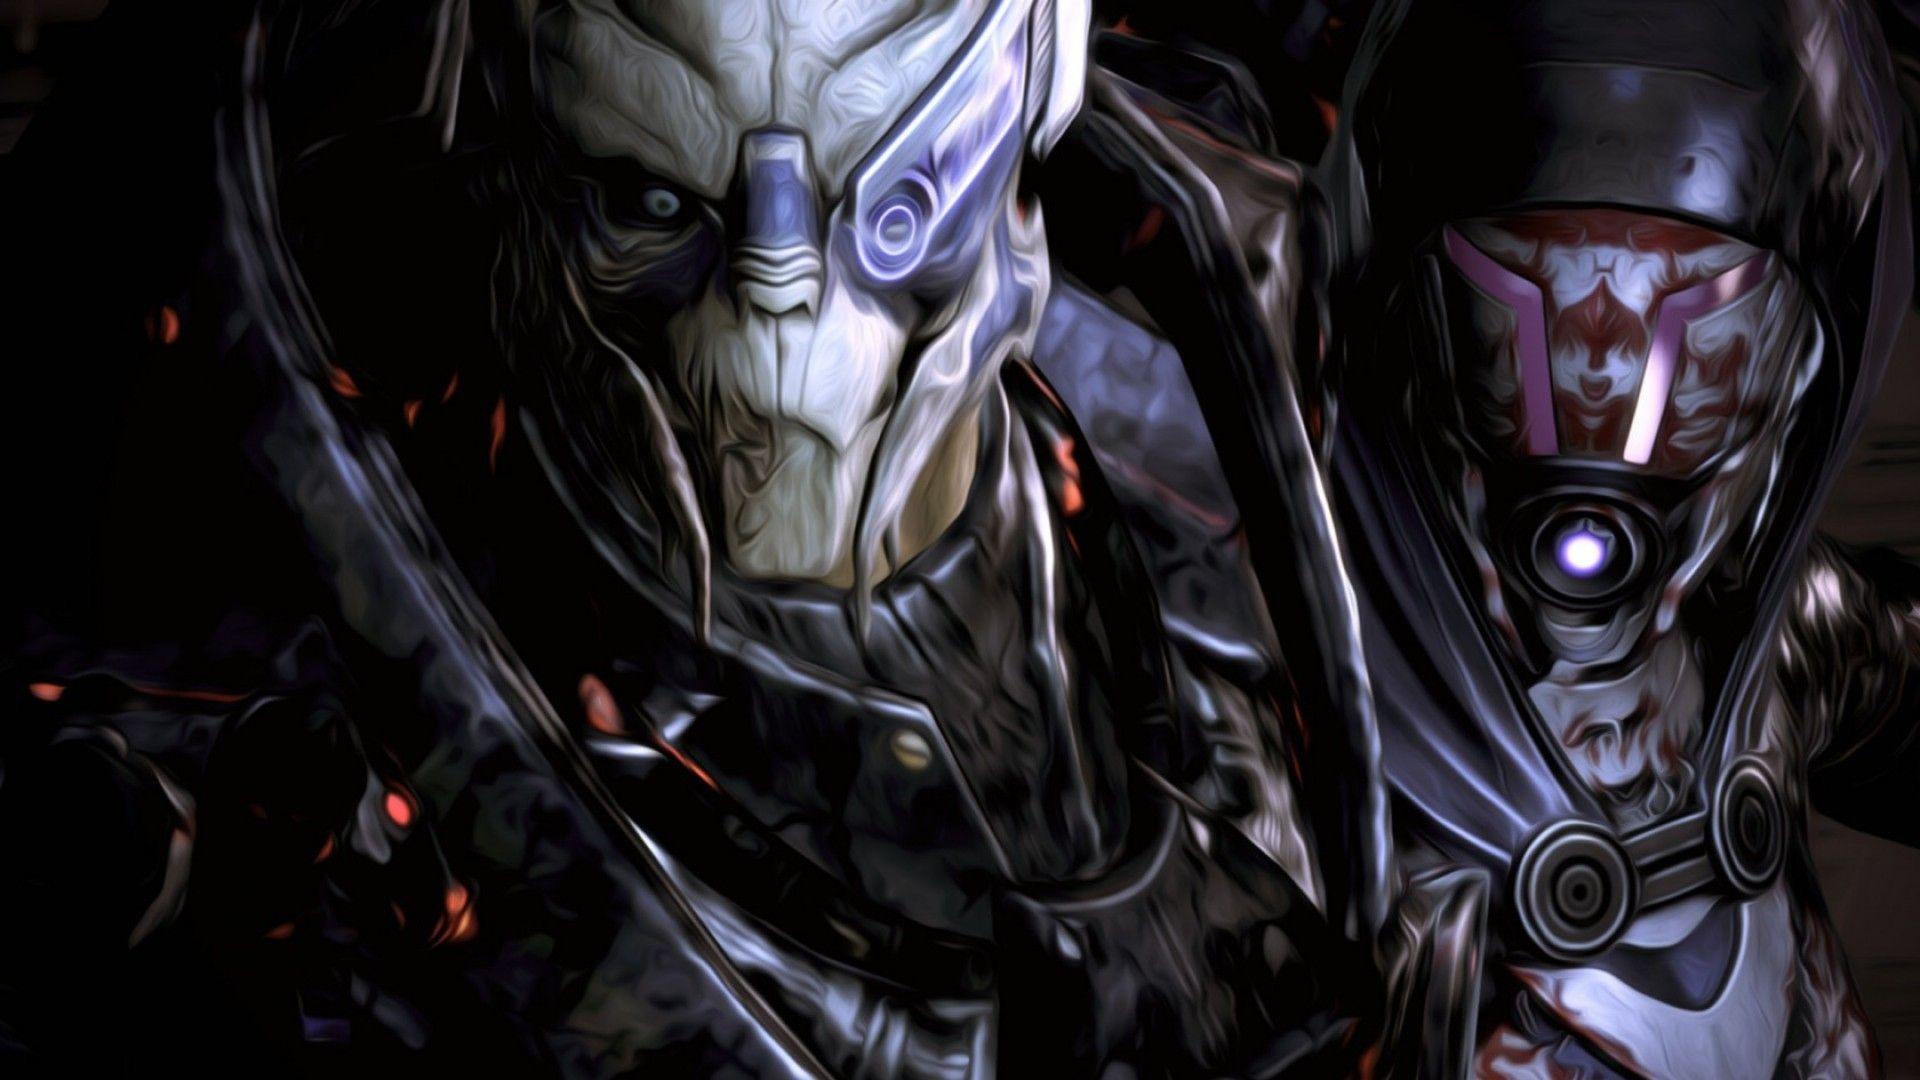 4k Mass Effect Wallpapers Top Free 4k Mass Effect Backgrounds Wallpaperaccess 